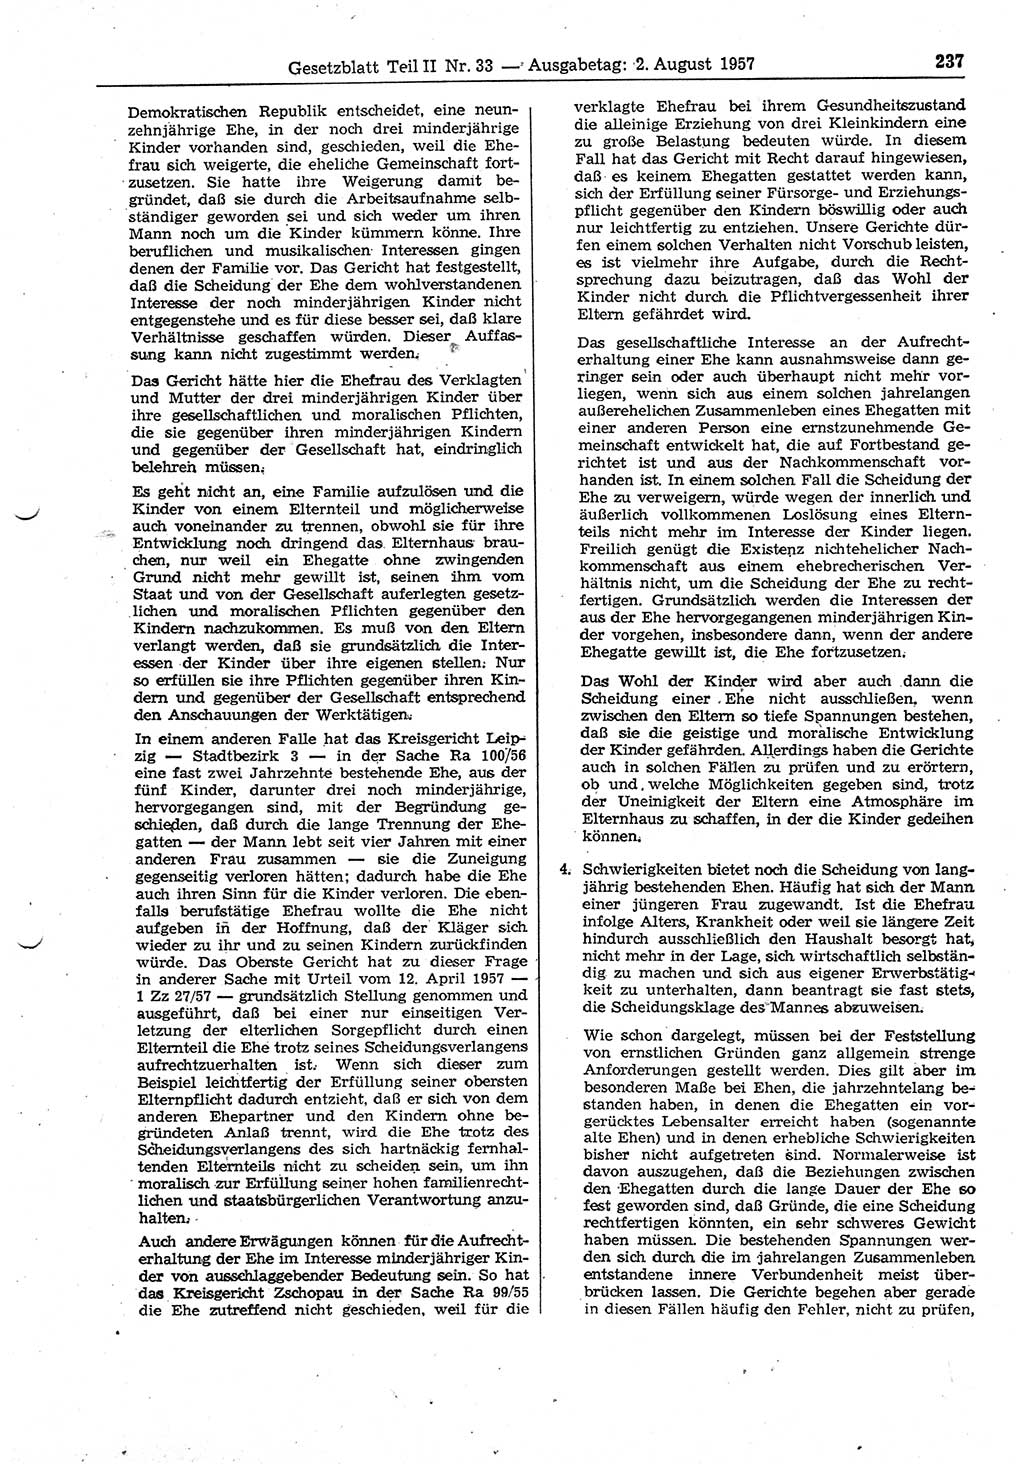 Gesetzblatt (GBl.) der Deutschen Demokratischen Republik (DDR) Teil ⅠⅠ 1957, Seite 237 (GBl. DDR ⅠⅠ 1957, S. 237)